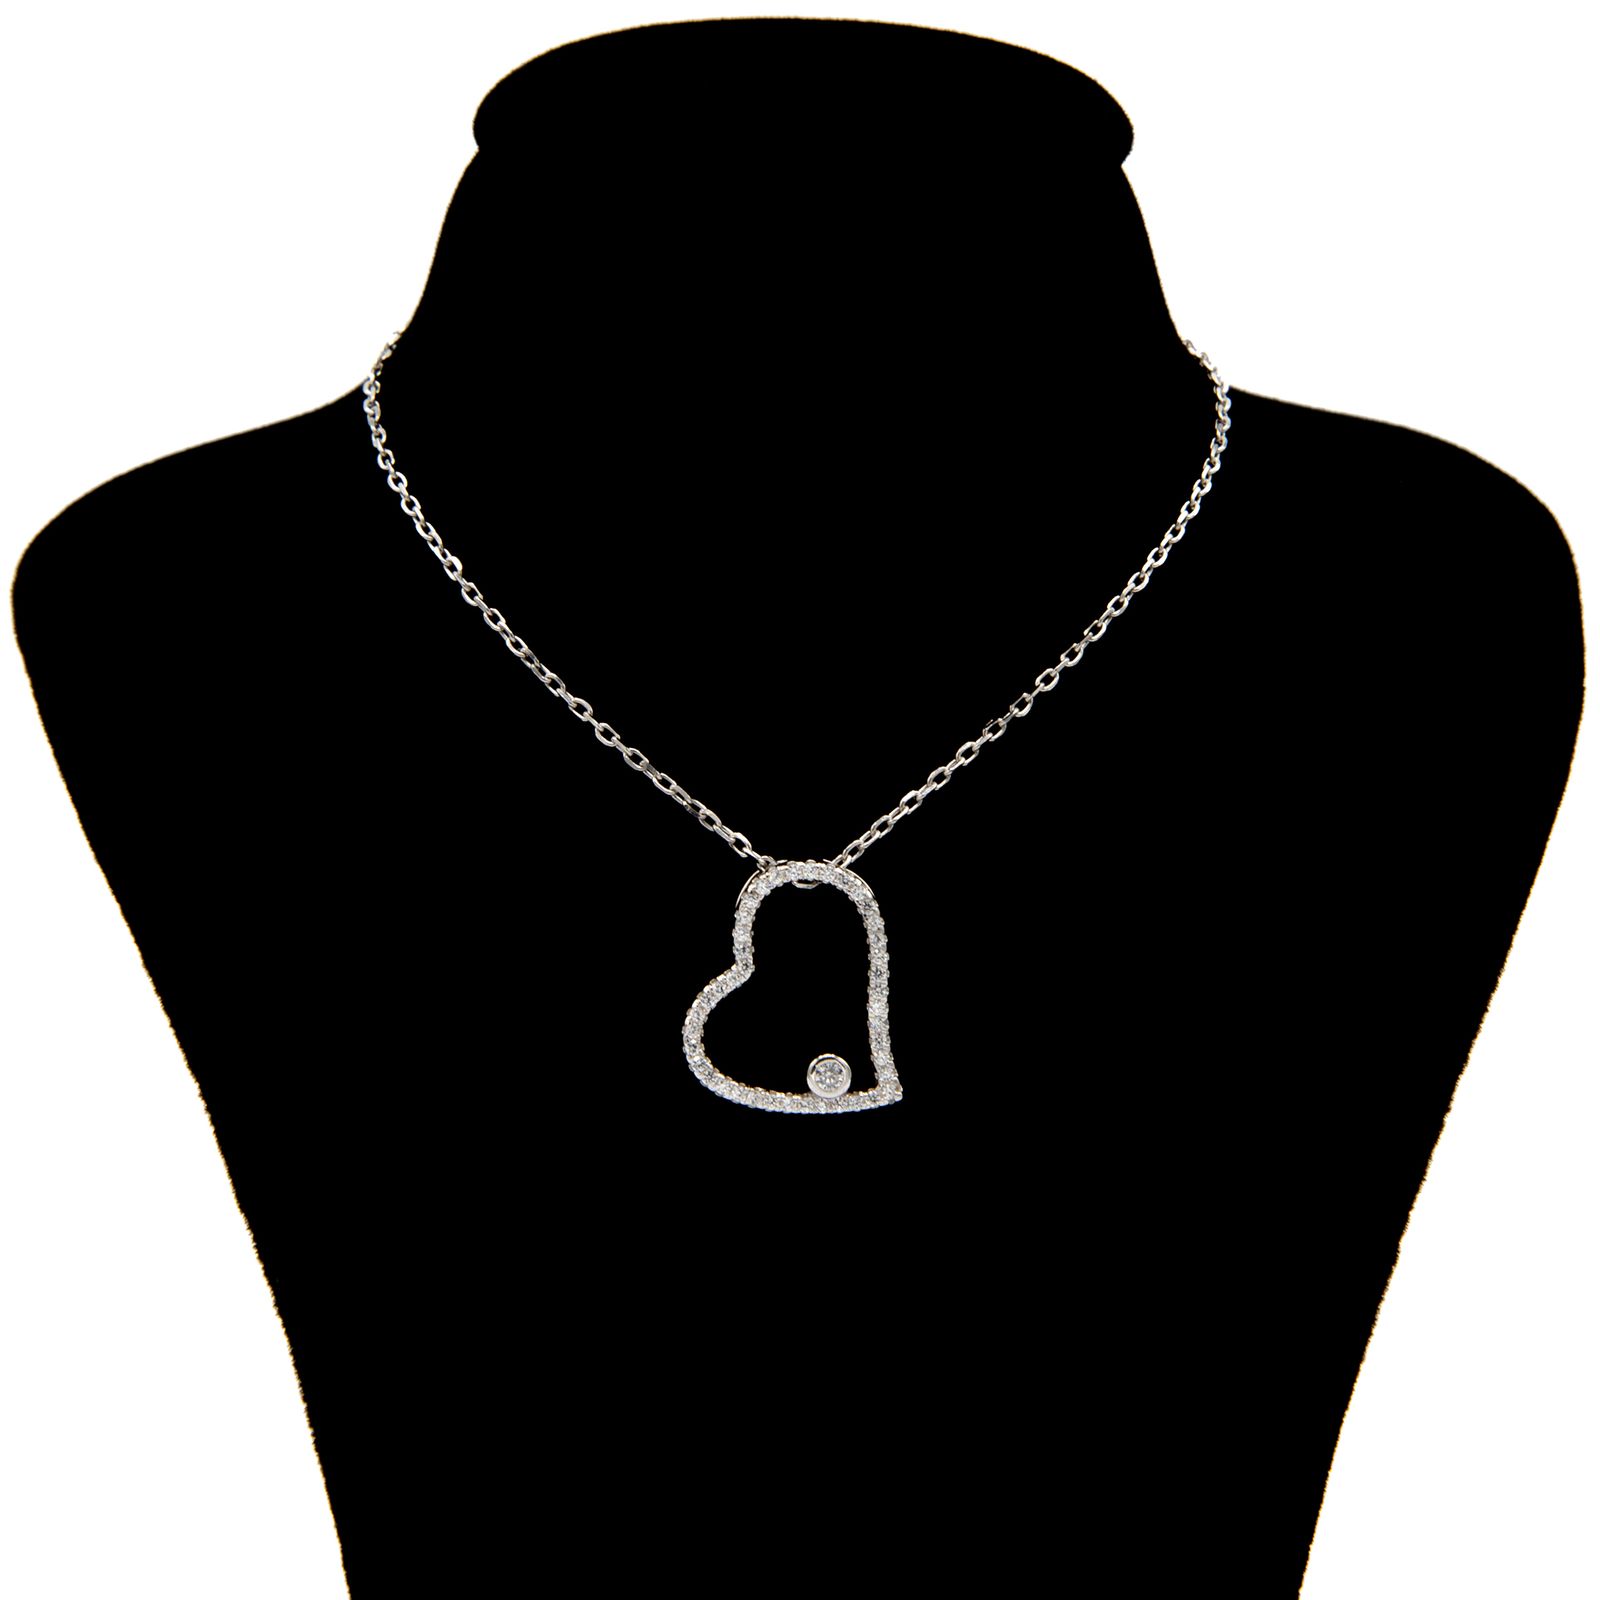 گردنبند نقره زنانه بهارگالری طرح Jeweled heart کد 402022 -  - 1